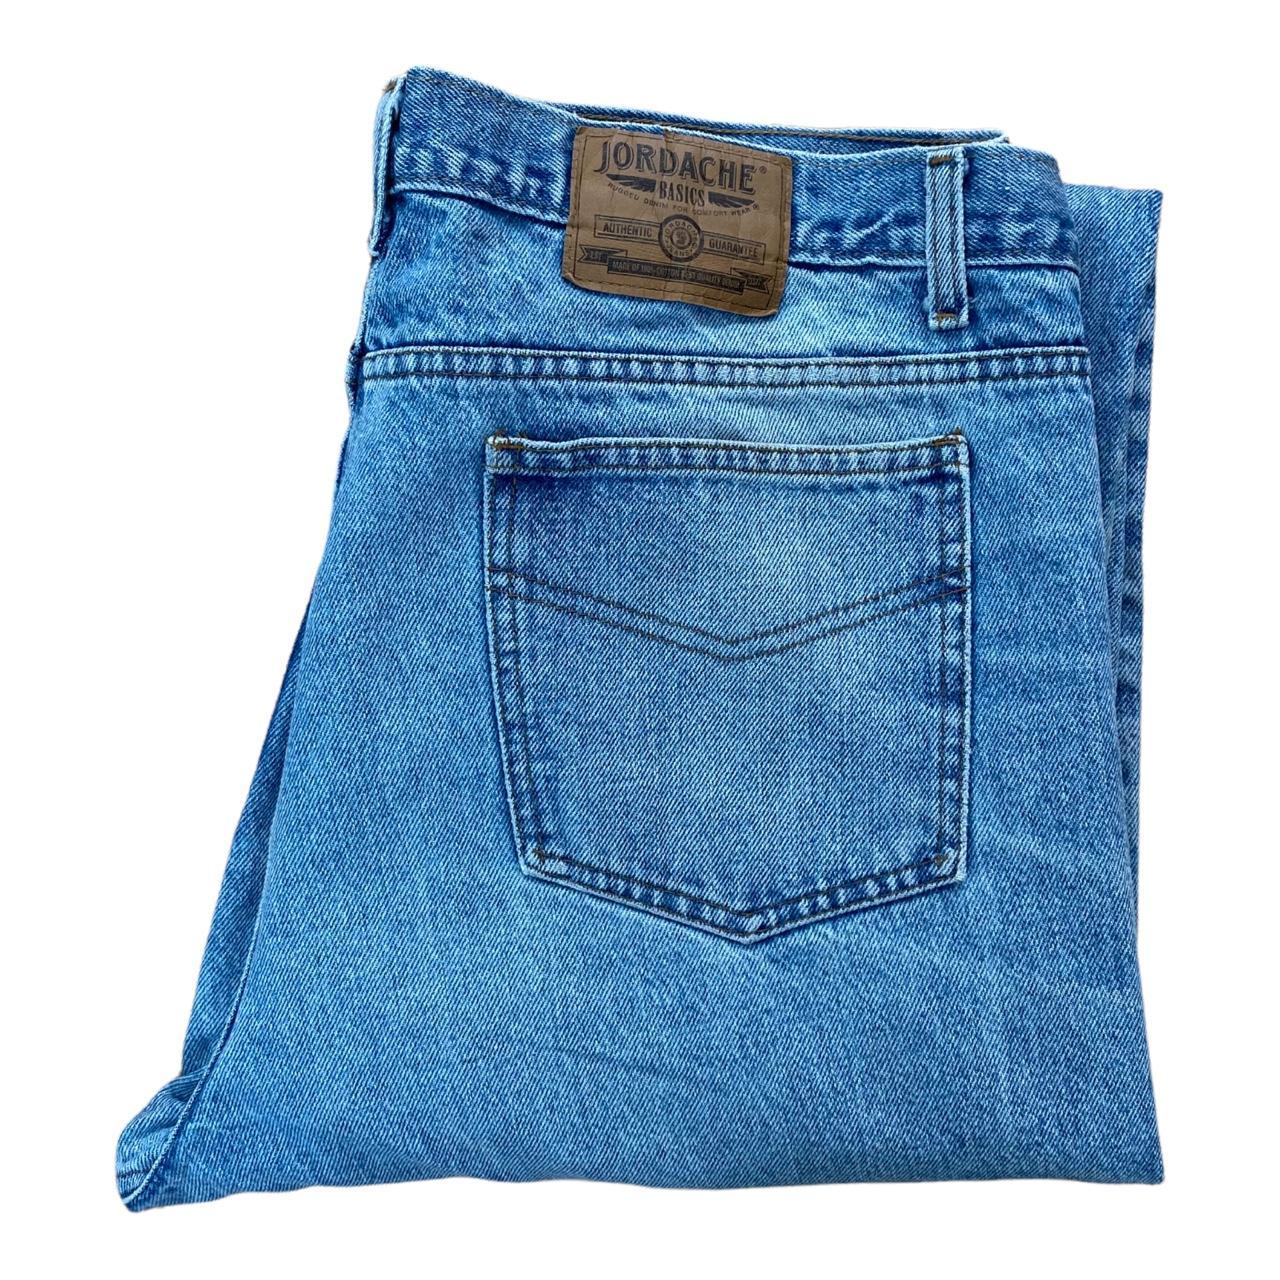 Vintage Jordache Basics Men’s Stonewash Blue Jeans... - Depop